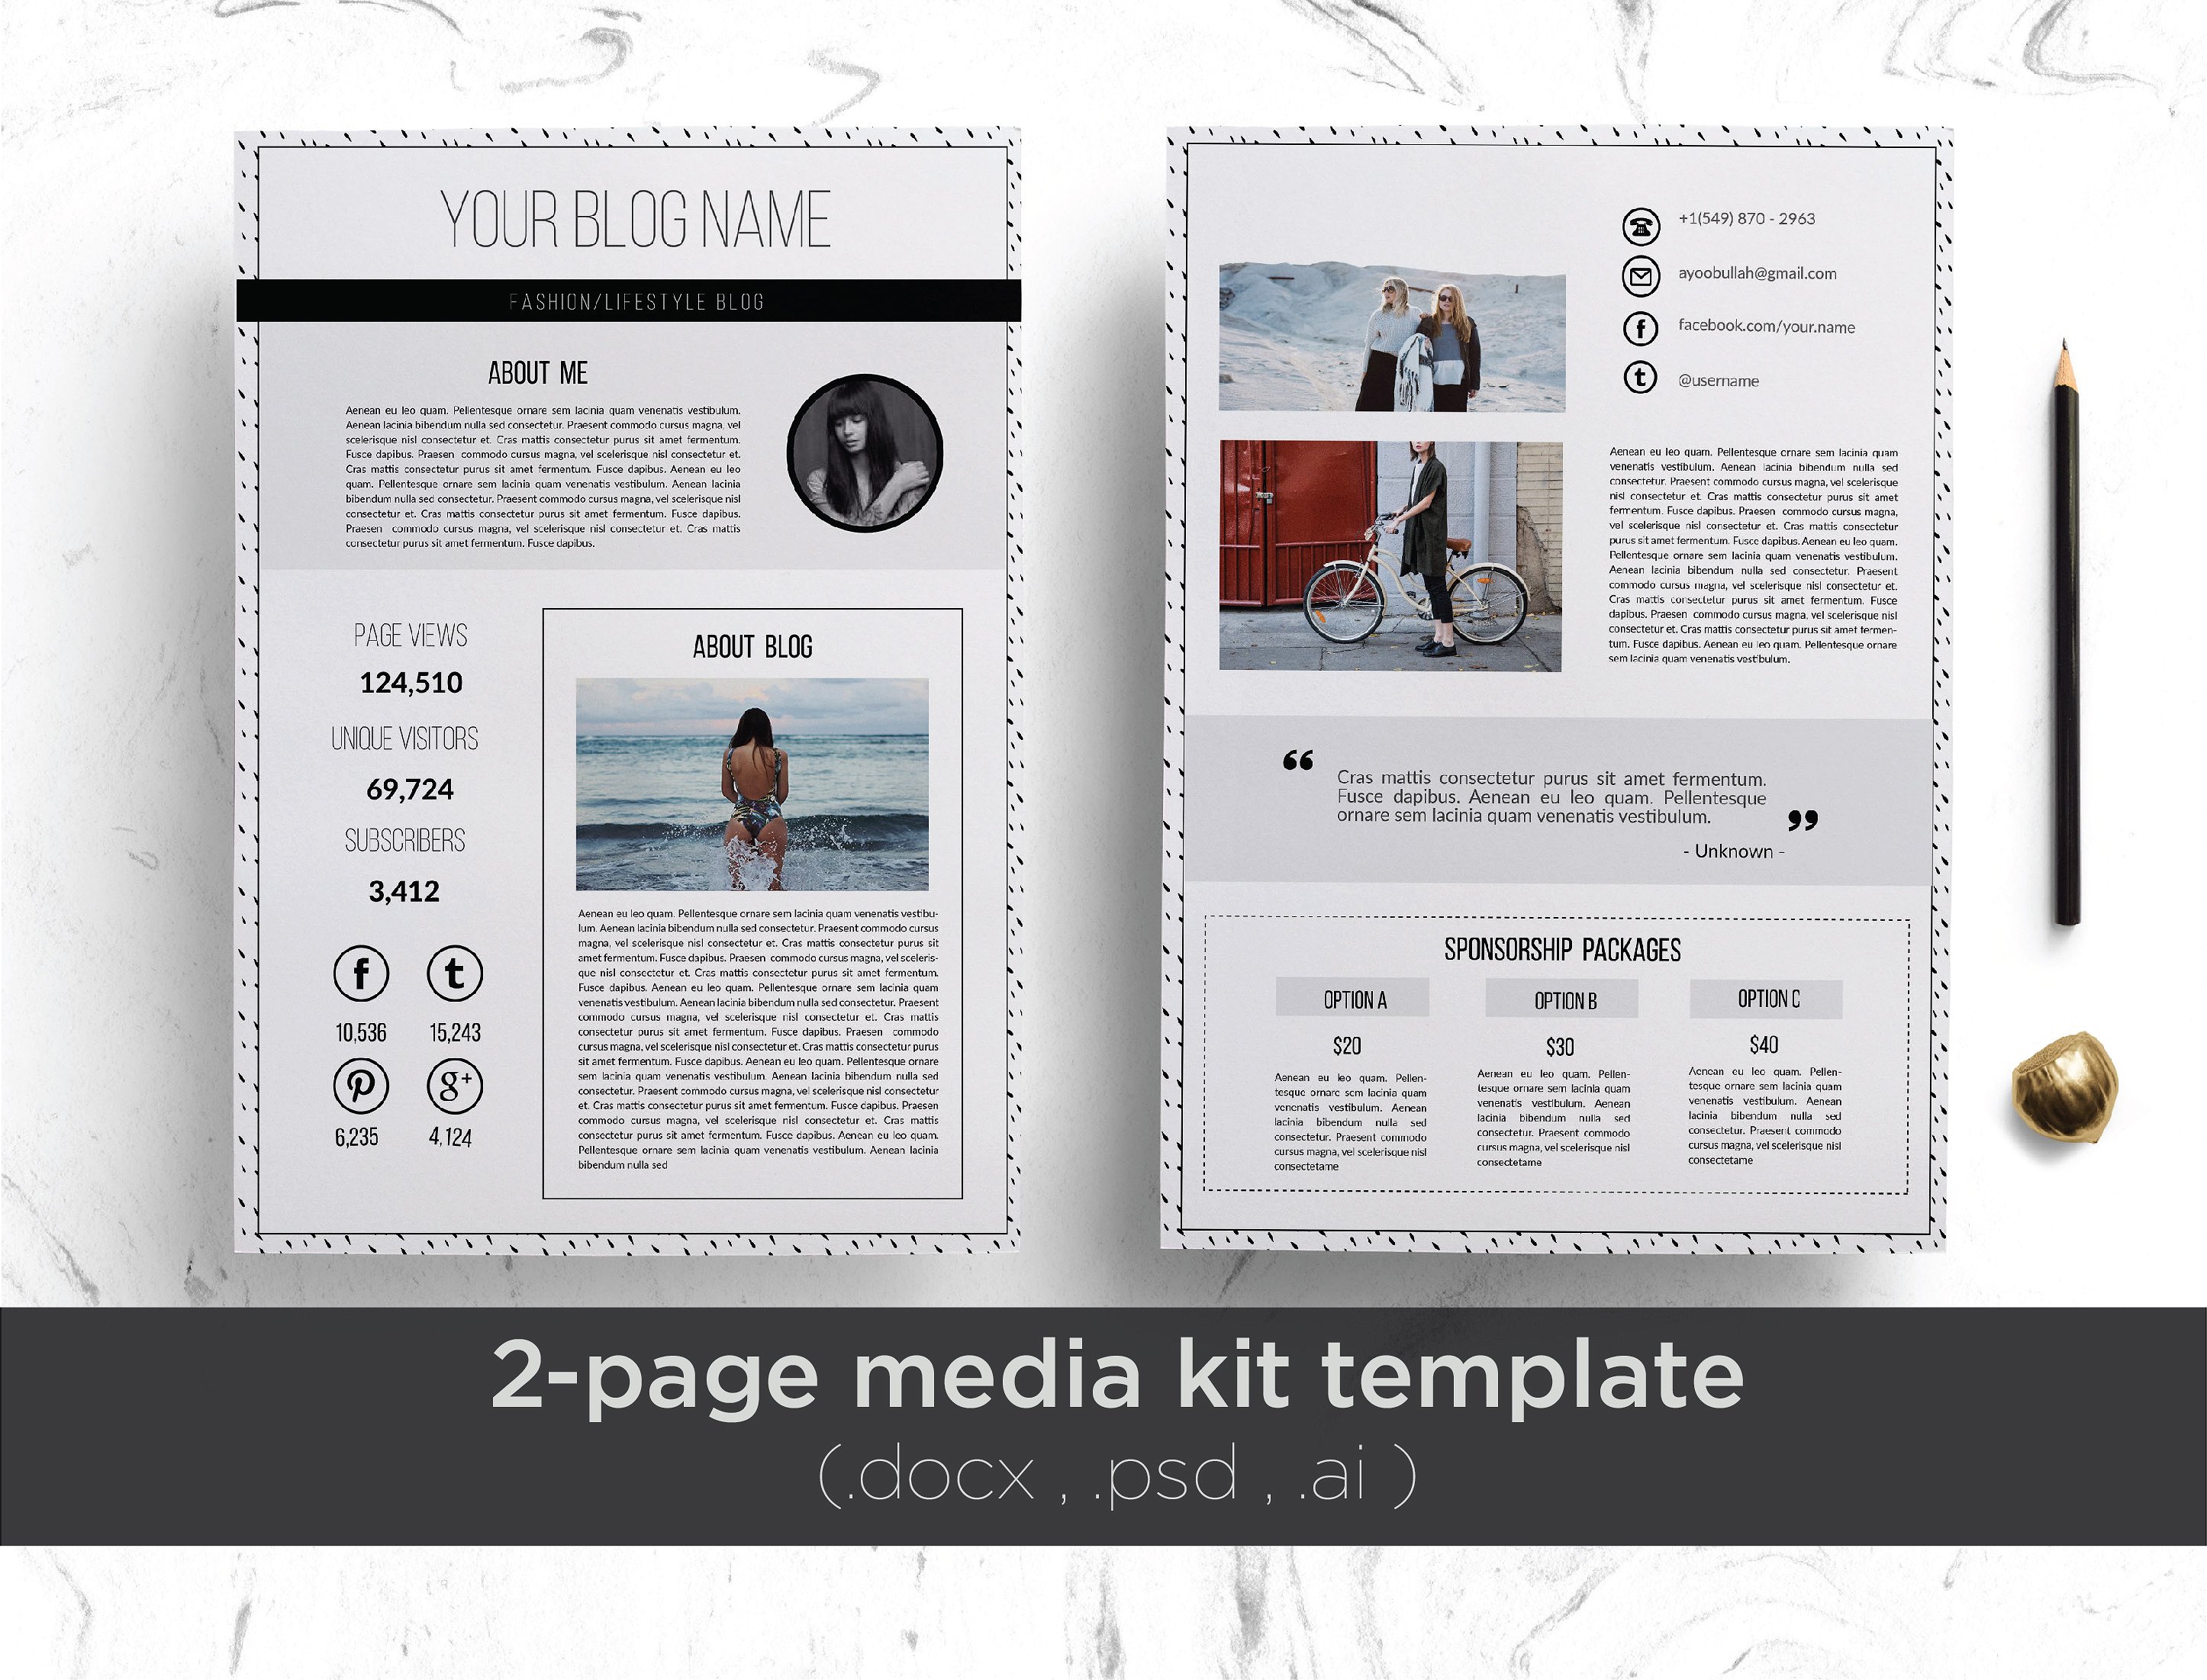 媒体博客设计素材工具包Elegant 2-page medi